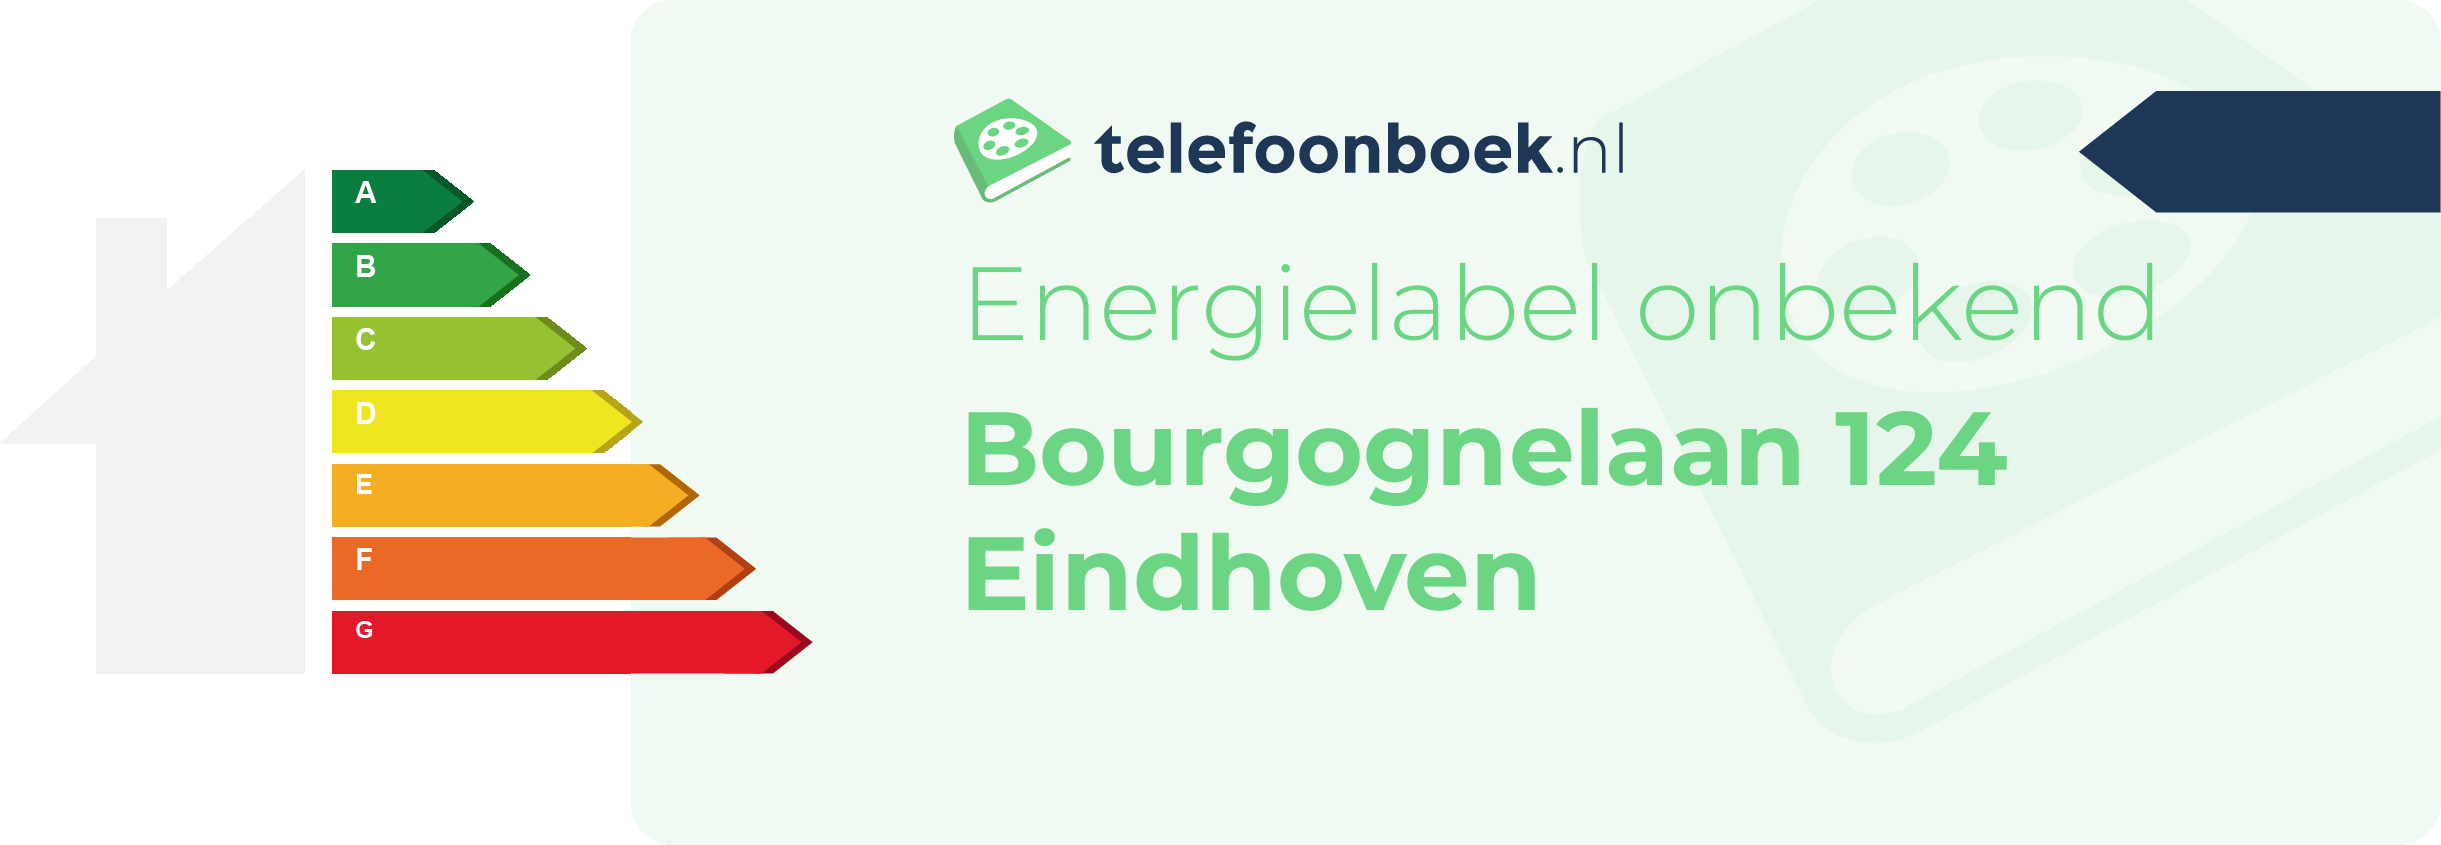 Energielabel Bourgognelaan 124 Eindhoven